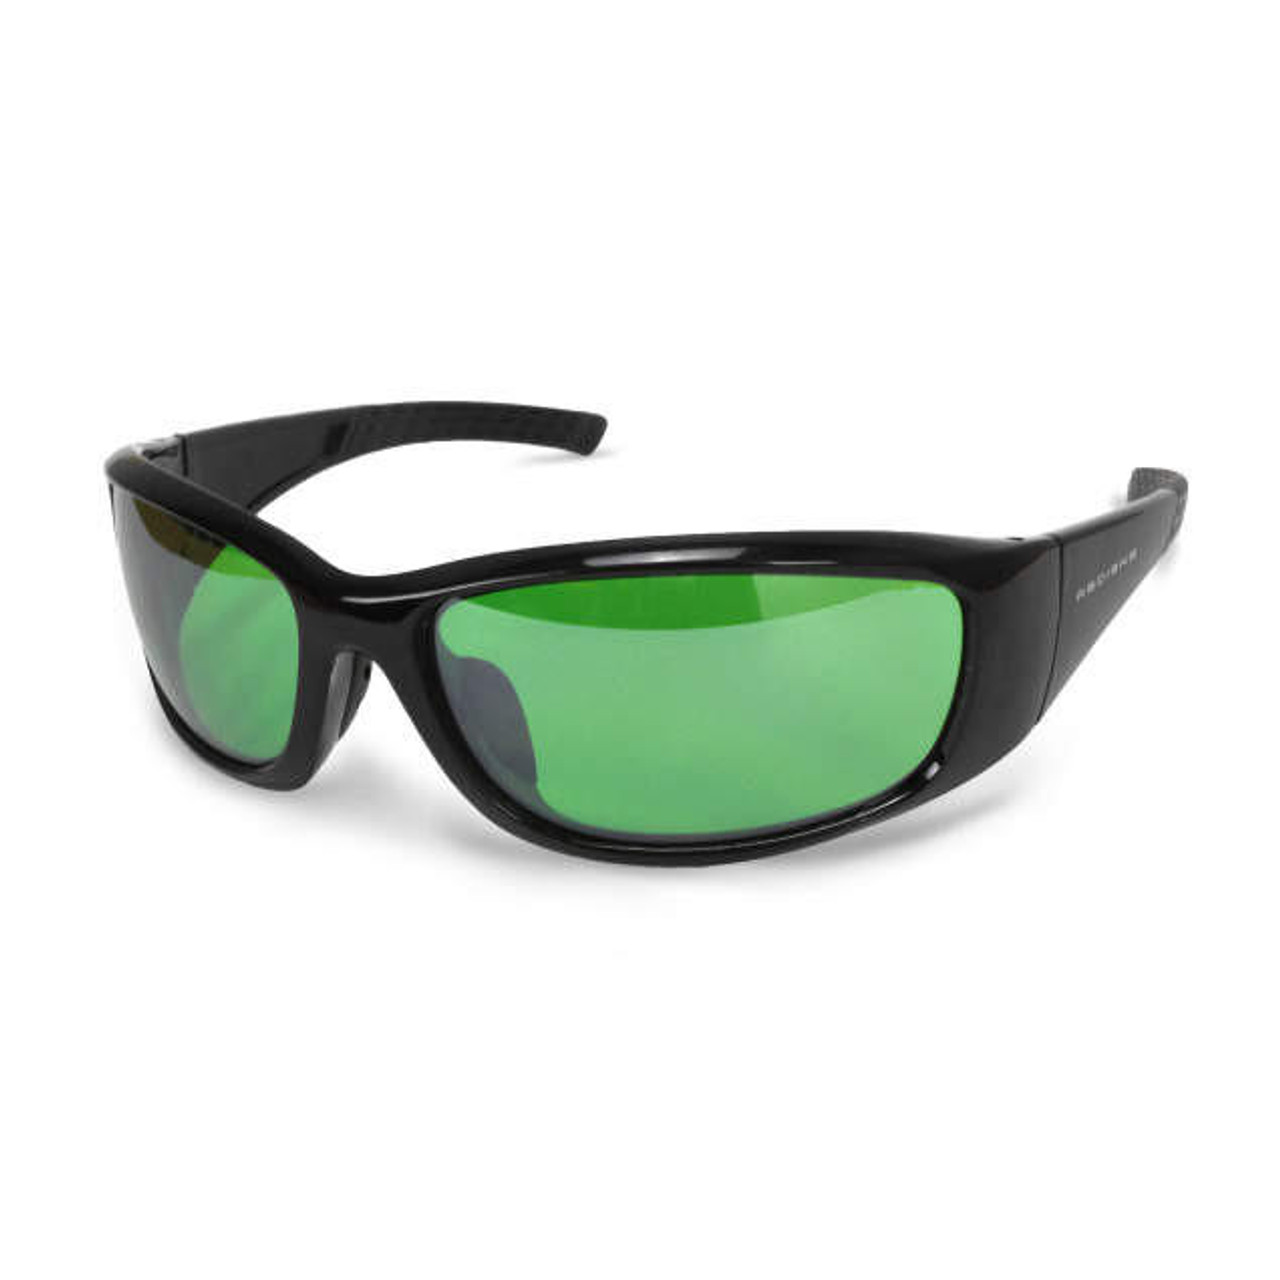 Radians - Indoor Farming Safety Glasses - VIL1-G0 - Villume - Green Lens -  Black Frame - ANSI Z87.1 - Impact Resistant